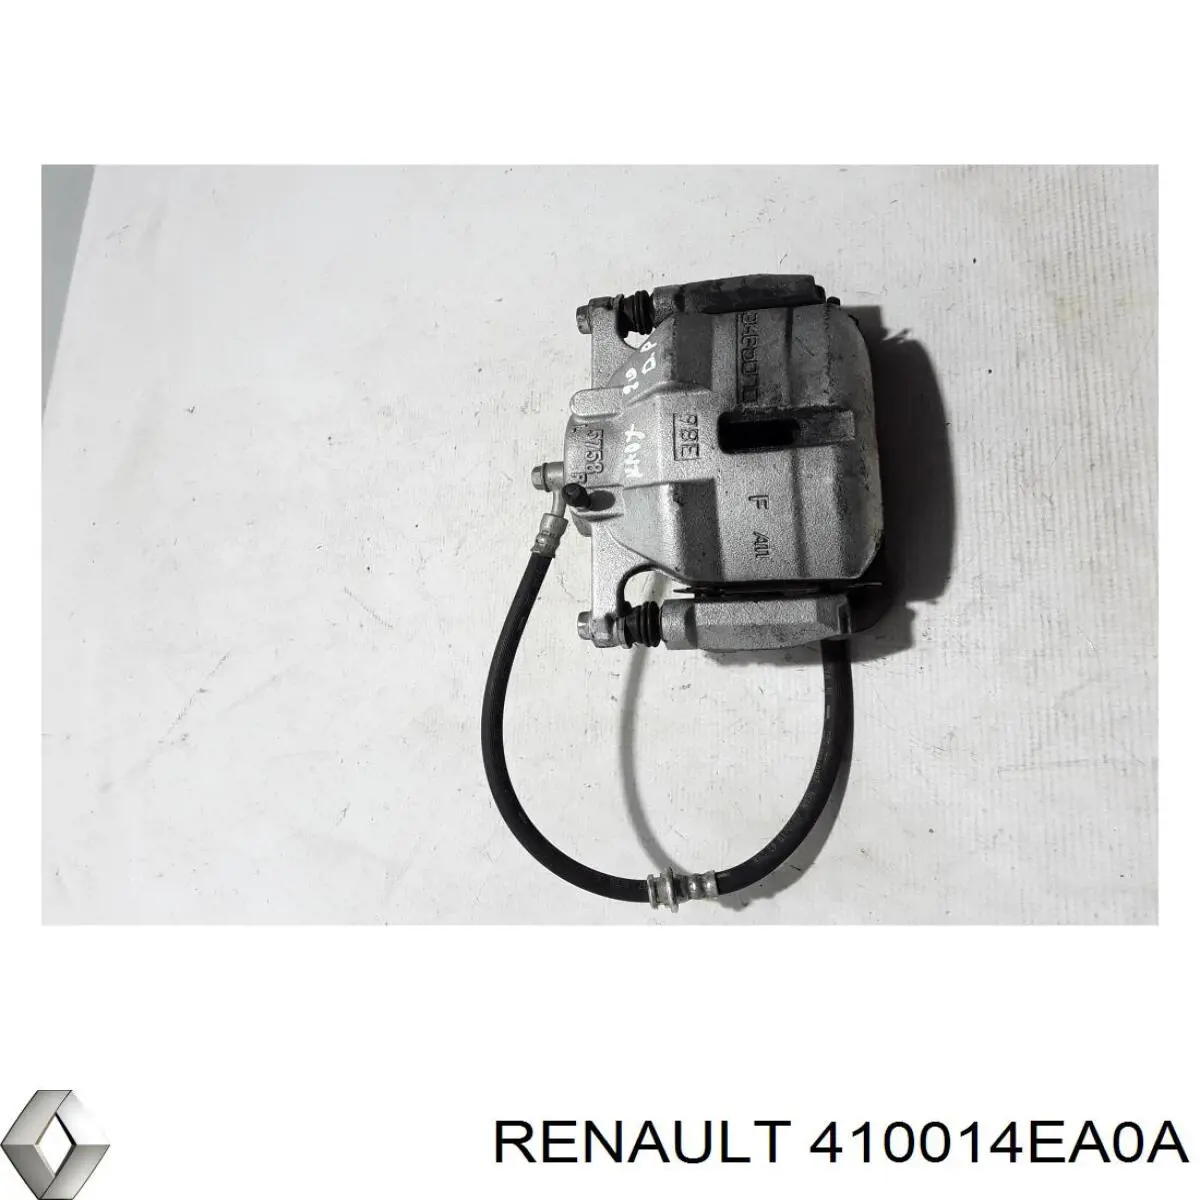 410014EA0A Renault (RVI) pinza de freno delantera derecha